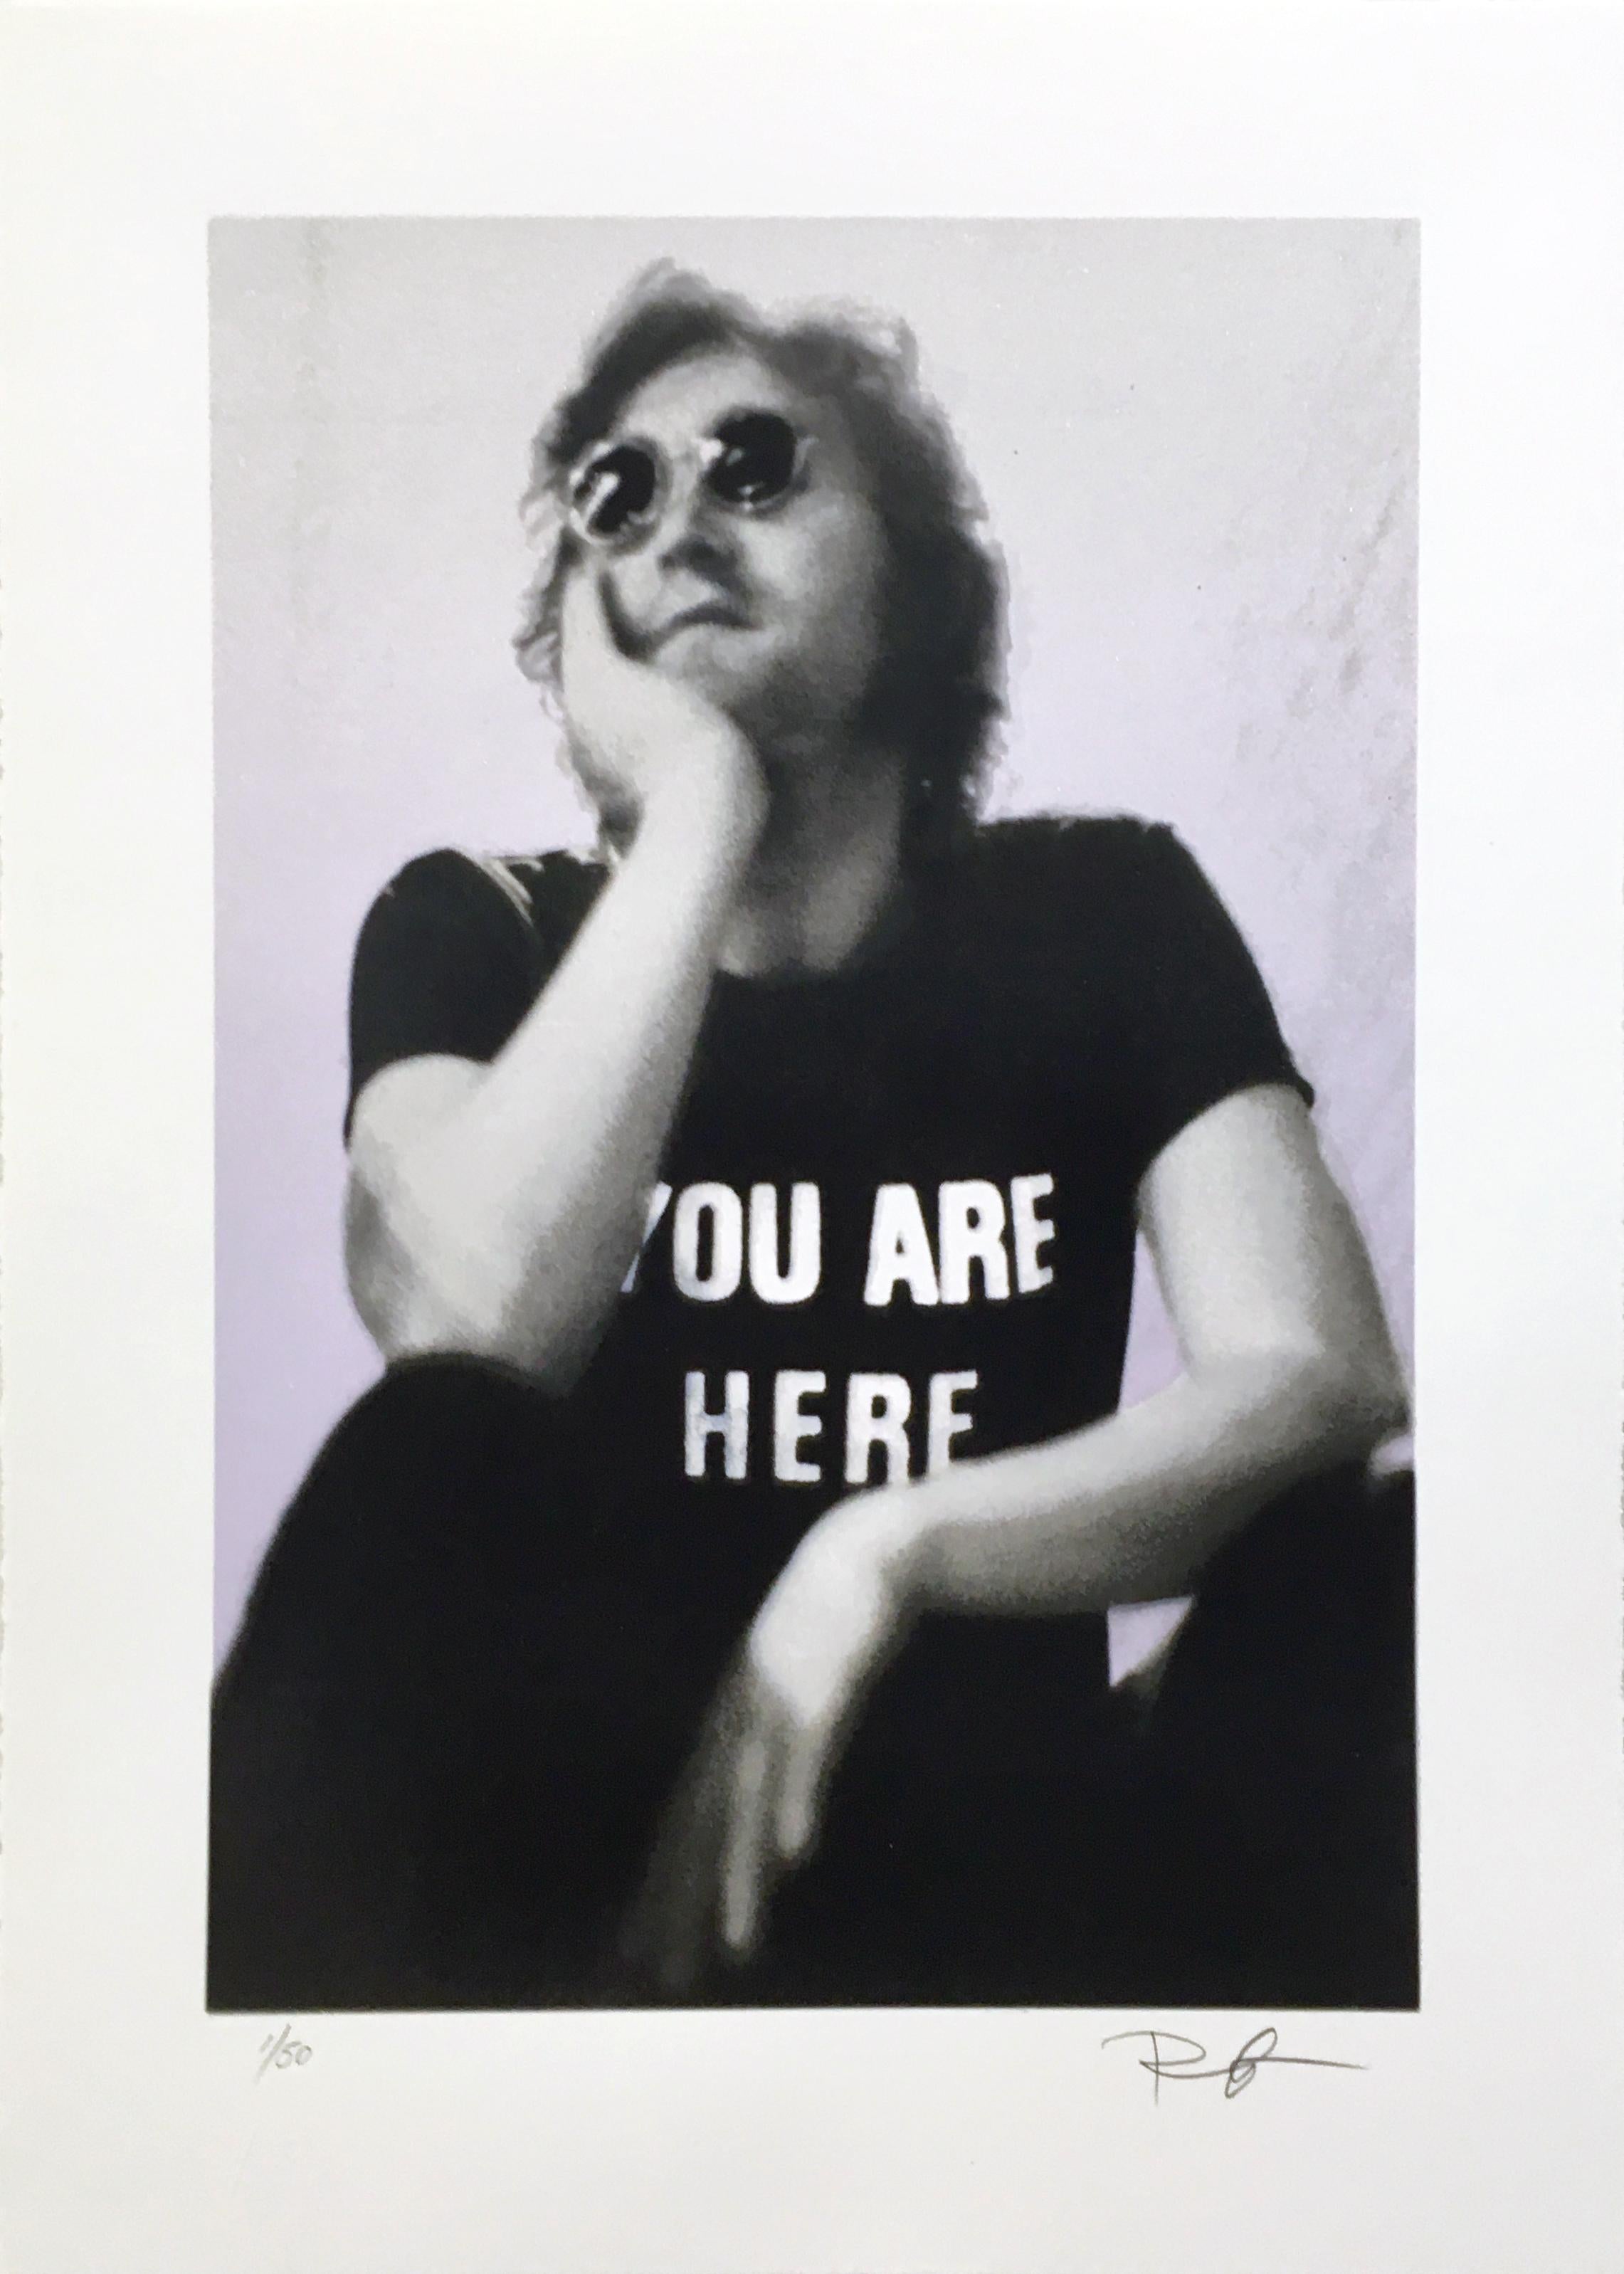 "John Lennon, Fillmore East, NYC, August 1972"